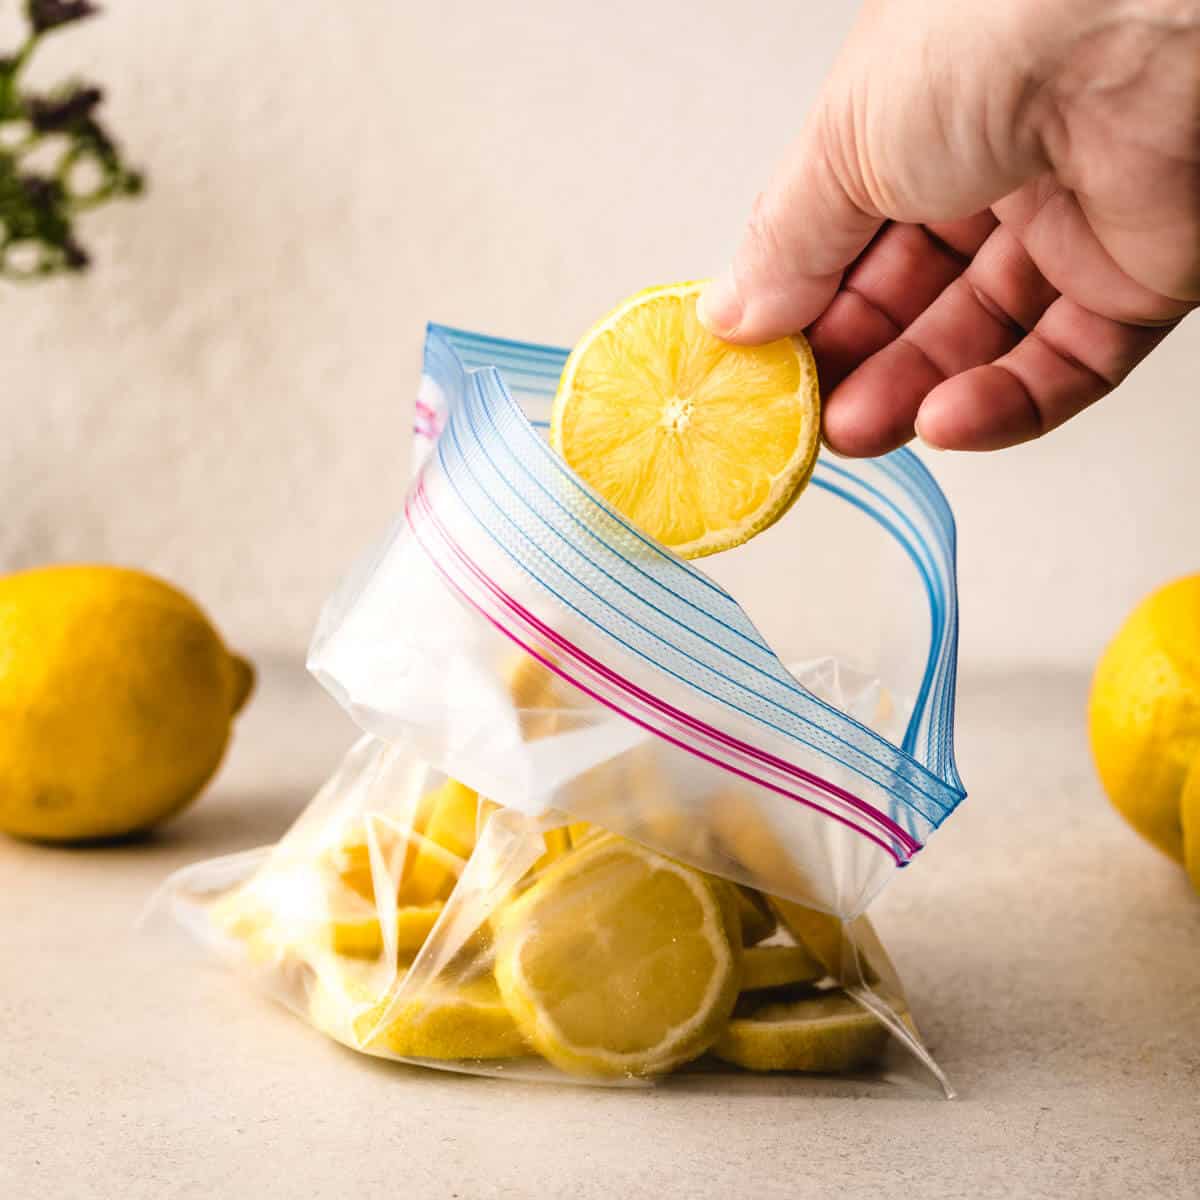 How To Store Sliced Lemons